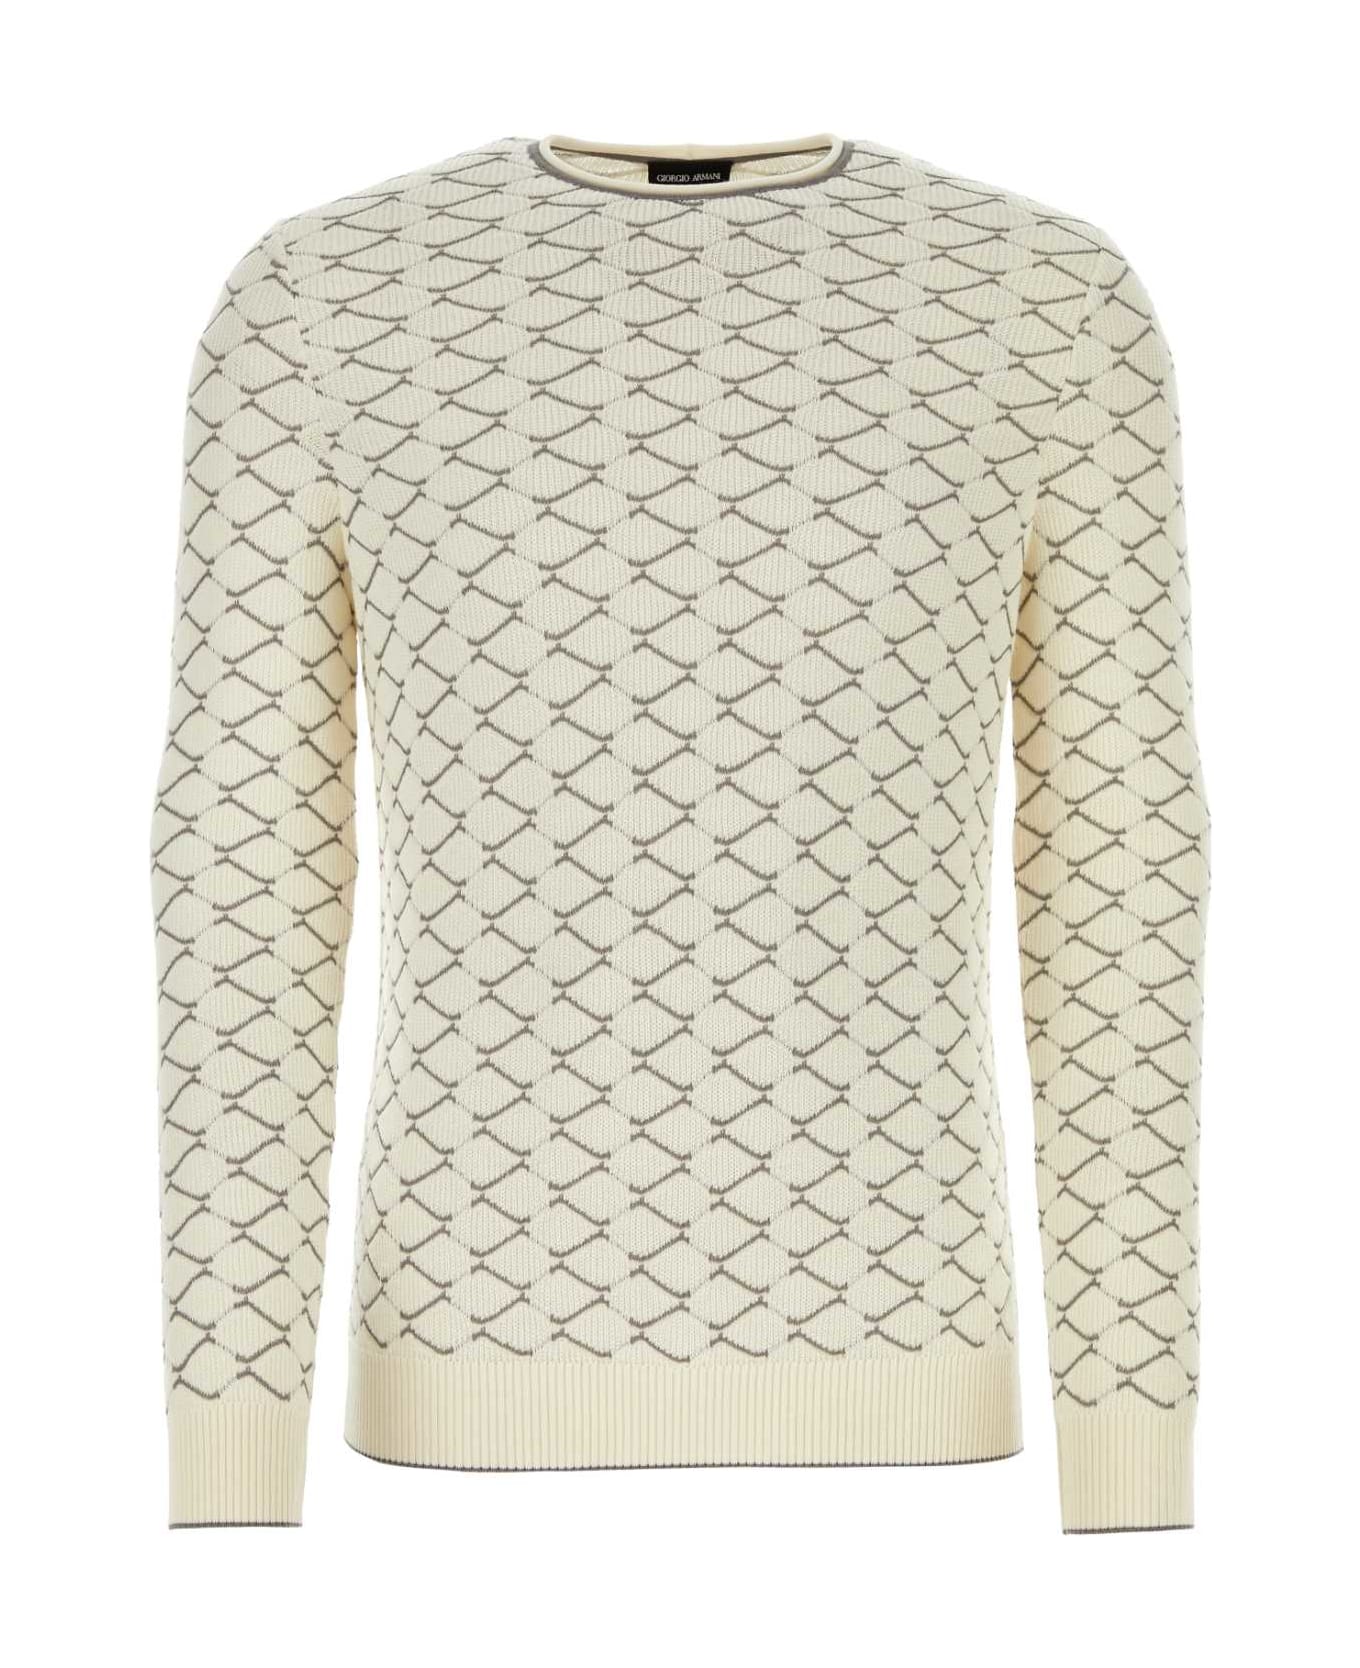 Giorgio Armani Ivory Cotton Blend Sweater - GESSO